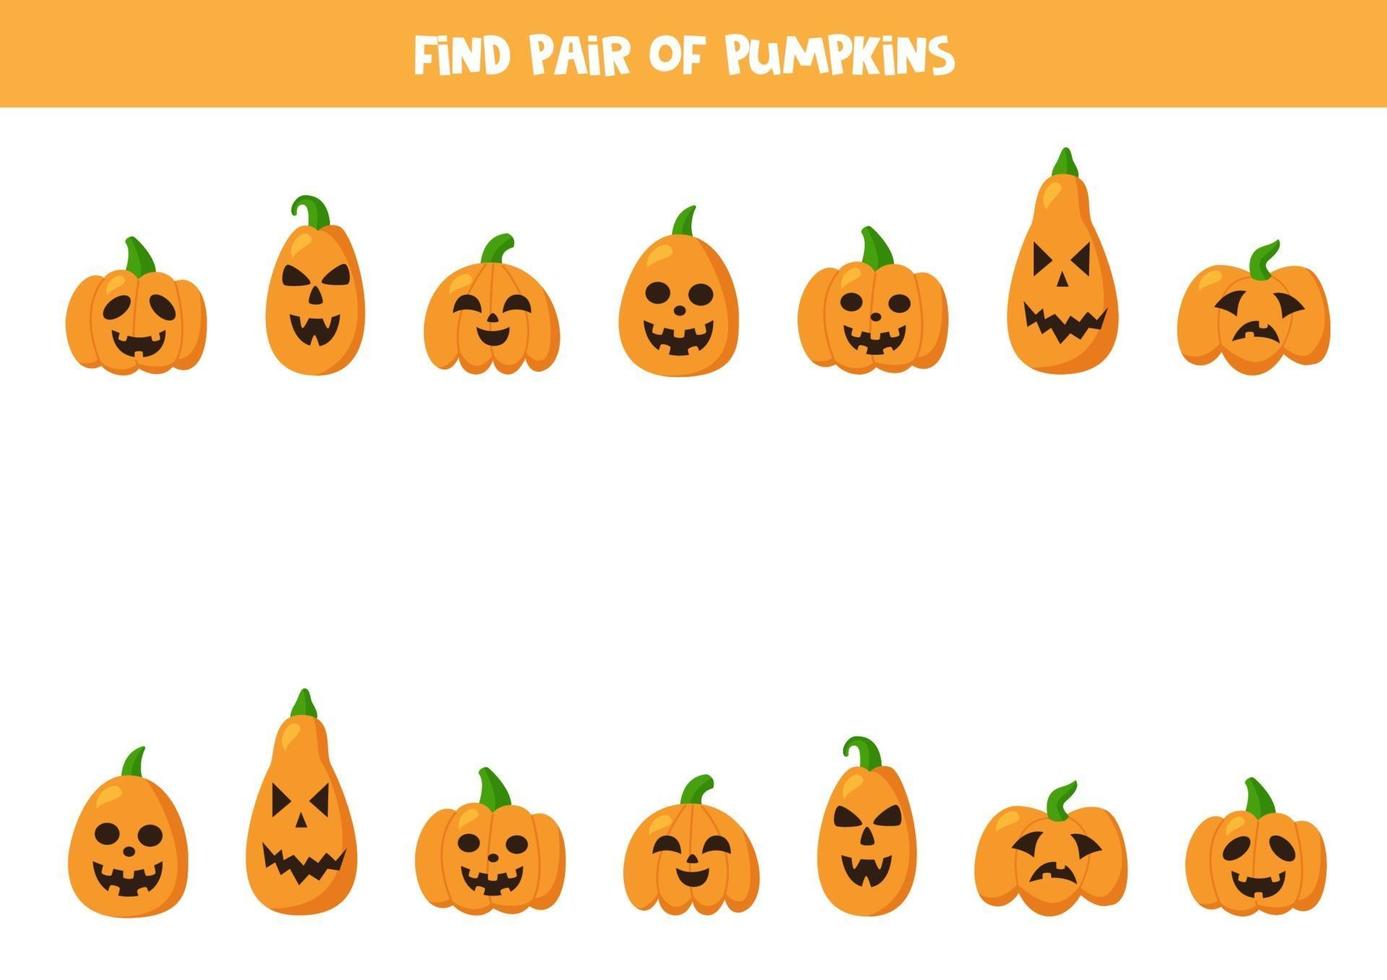 vind paren met schattige halloween-pompoenen. spel voor kinderen. vector